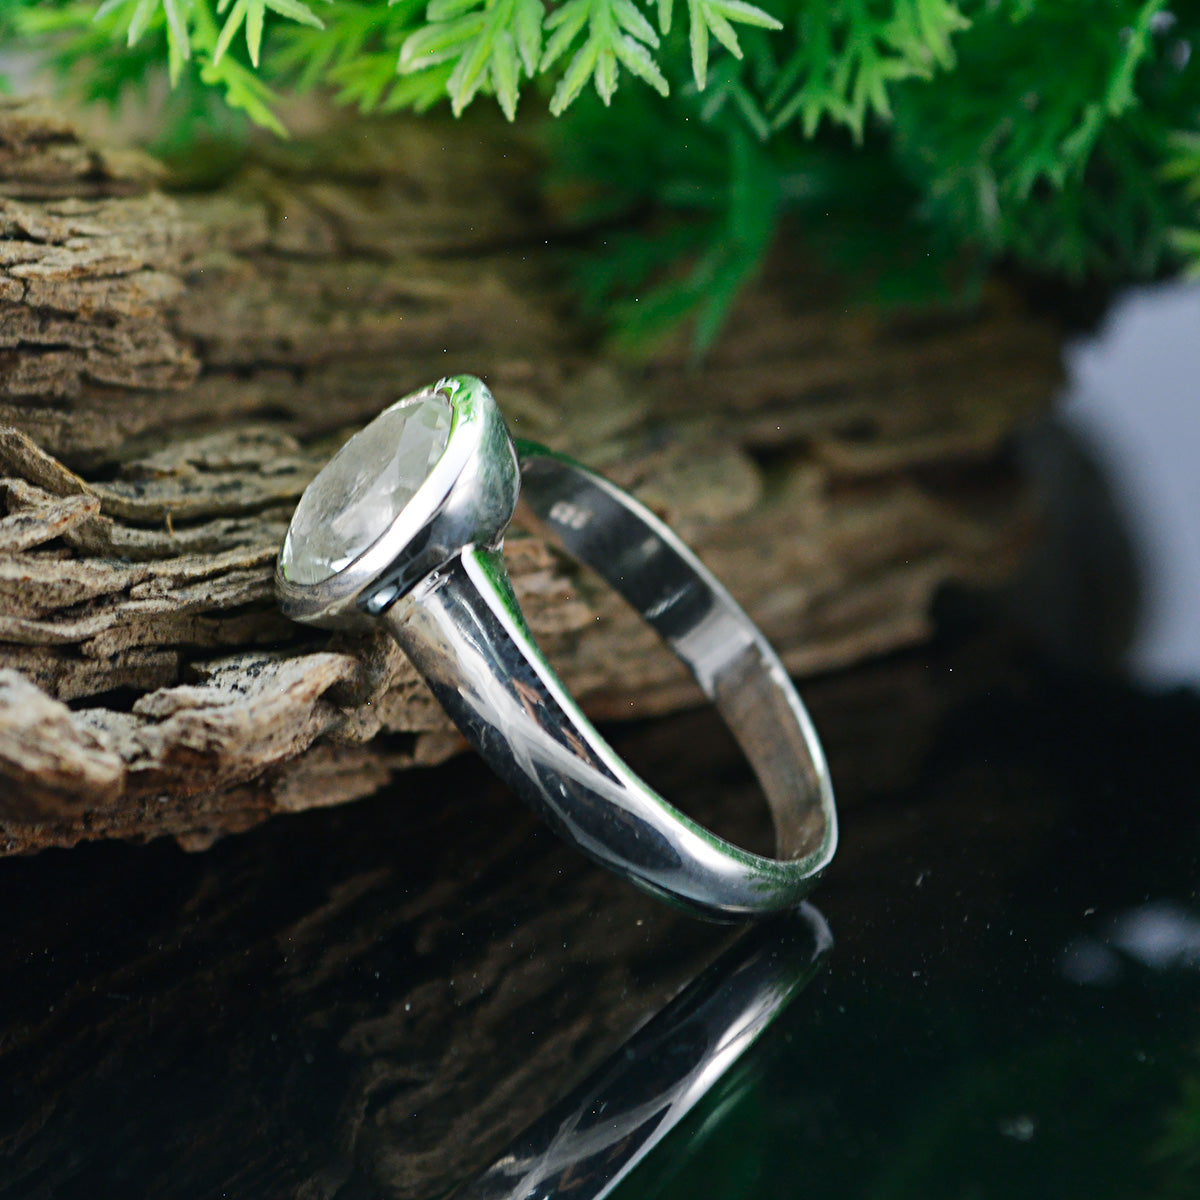 Presentable Gems Green Amethyst Solid Silver Rings Handmade Jewellery